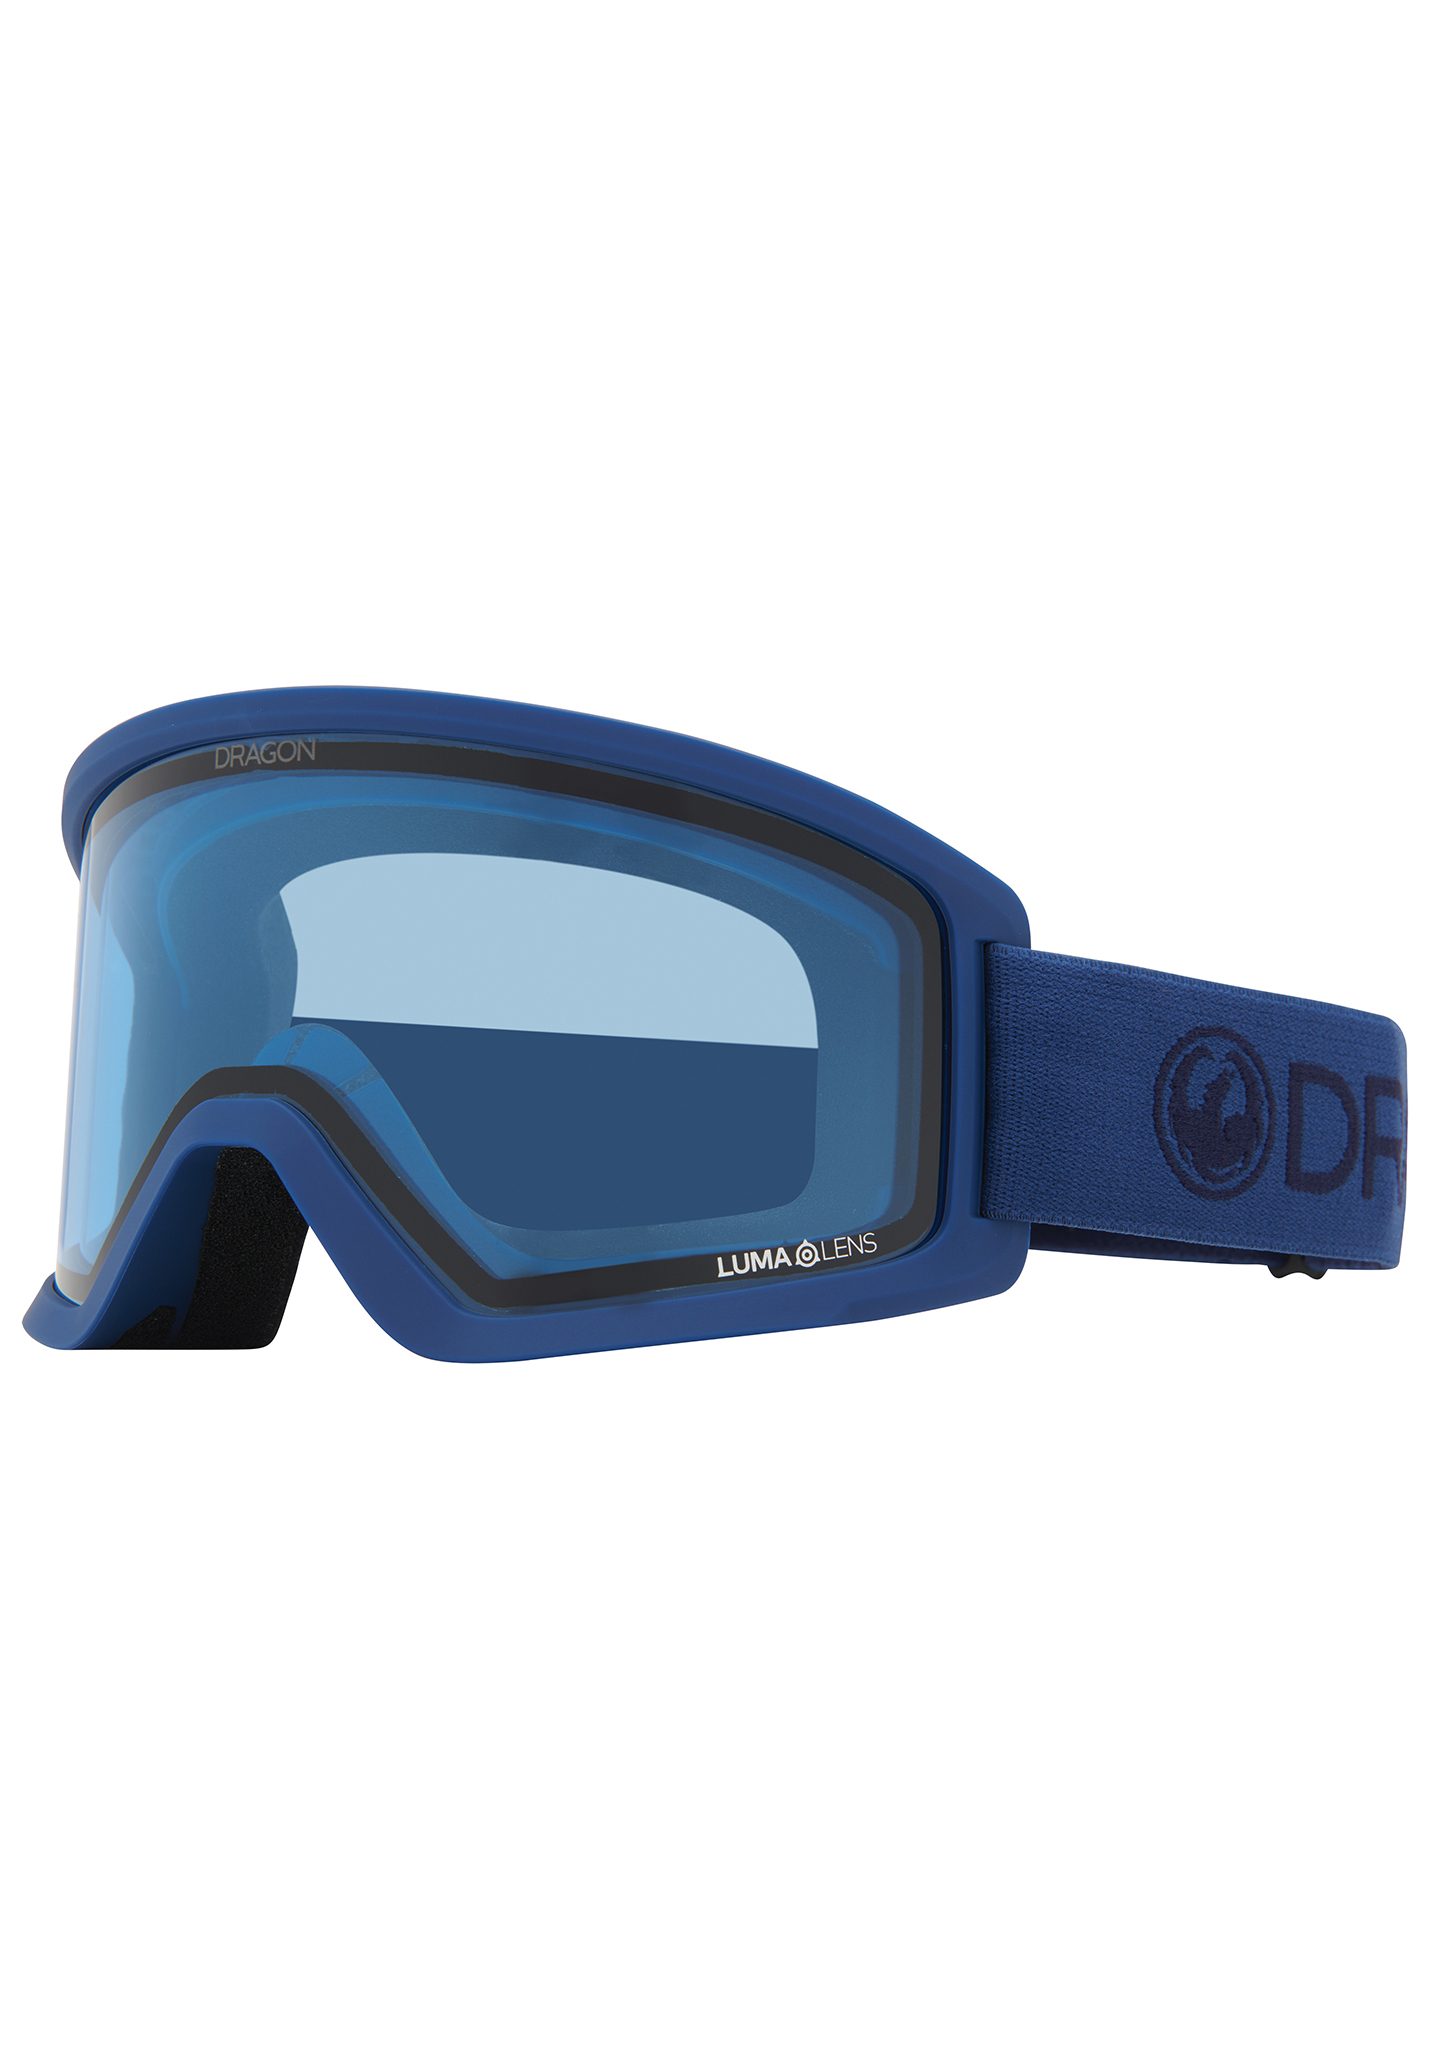 Dragon DX3 Snowboardbrillen hellmarine / lumalens blau One Size